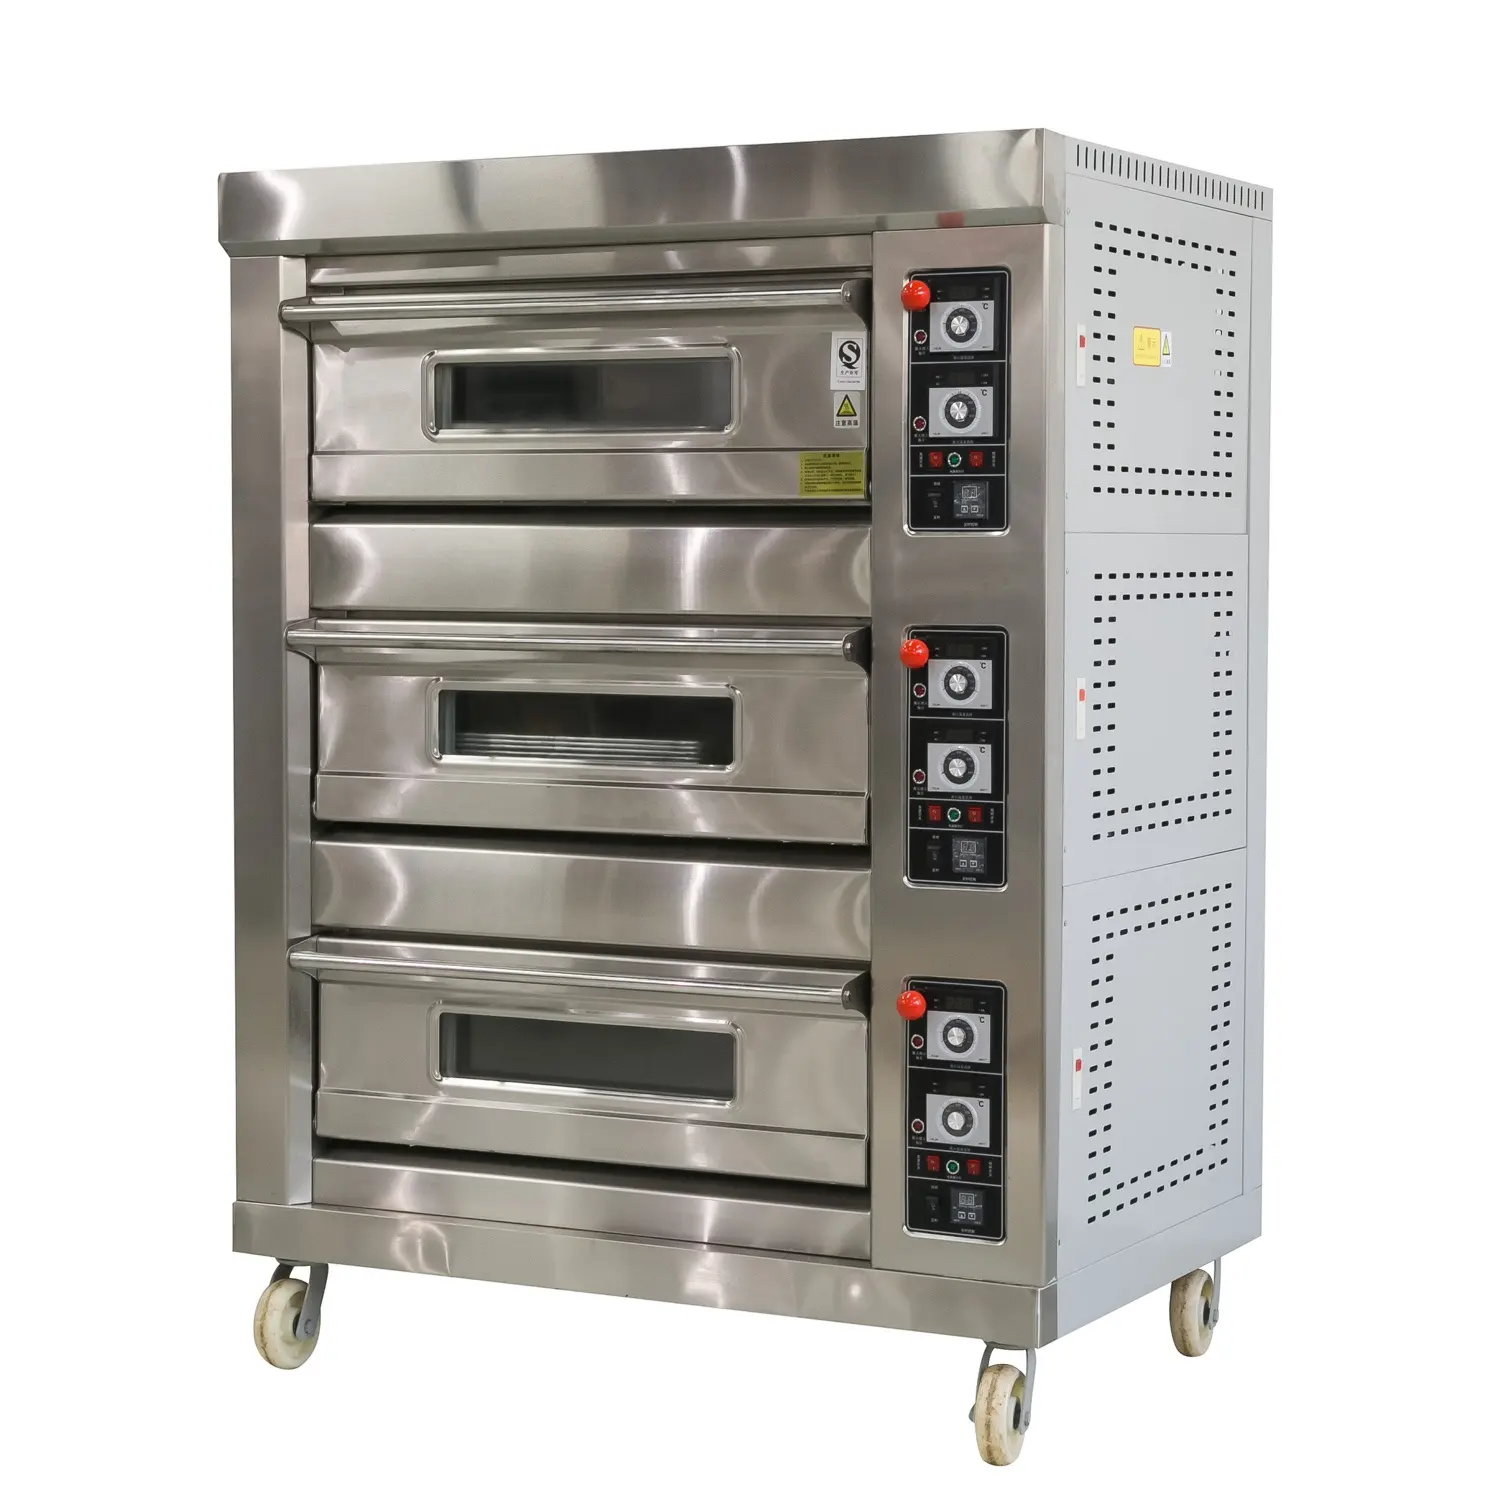 Nuovo forno da forno commerciale in arrivo con 3 armadi e termometri da forno per affari e torte da forno